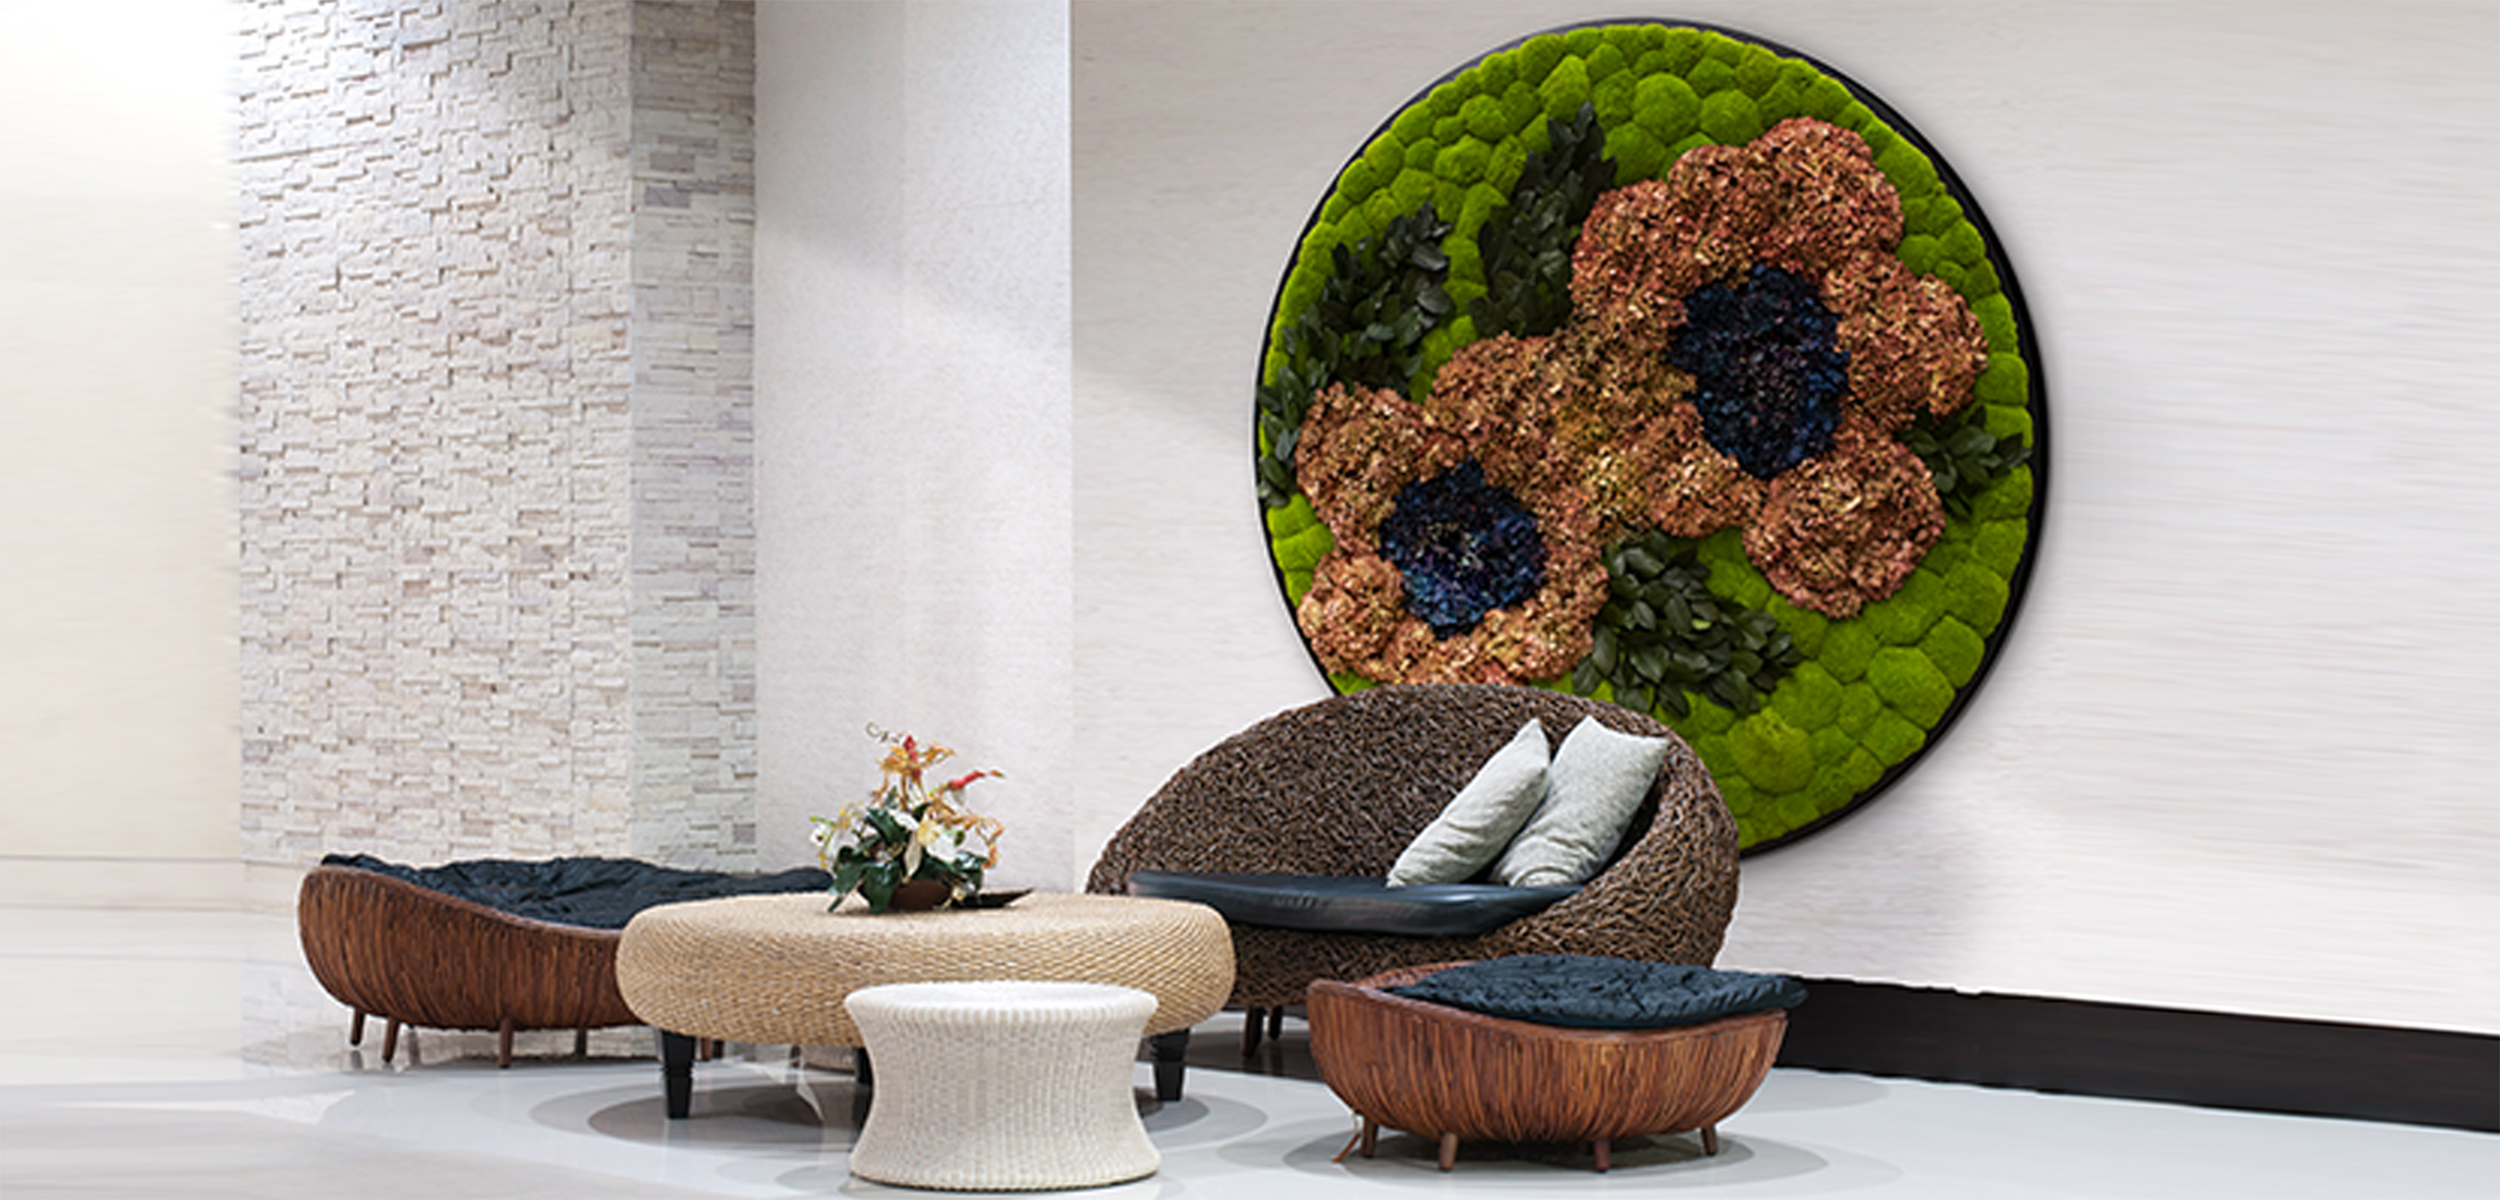 Rundes Moosbild aus Hortensien,Pflanzen und Ballenmoos in einem modernen Wohnzimmer